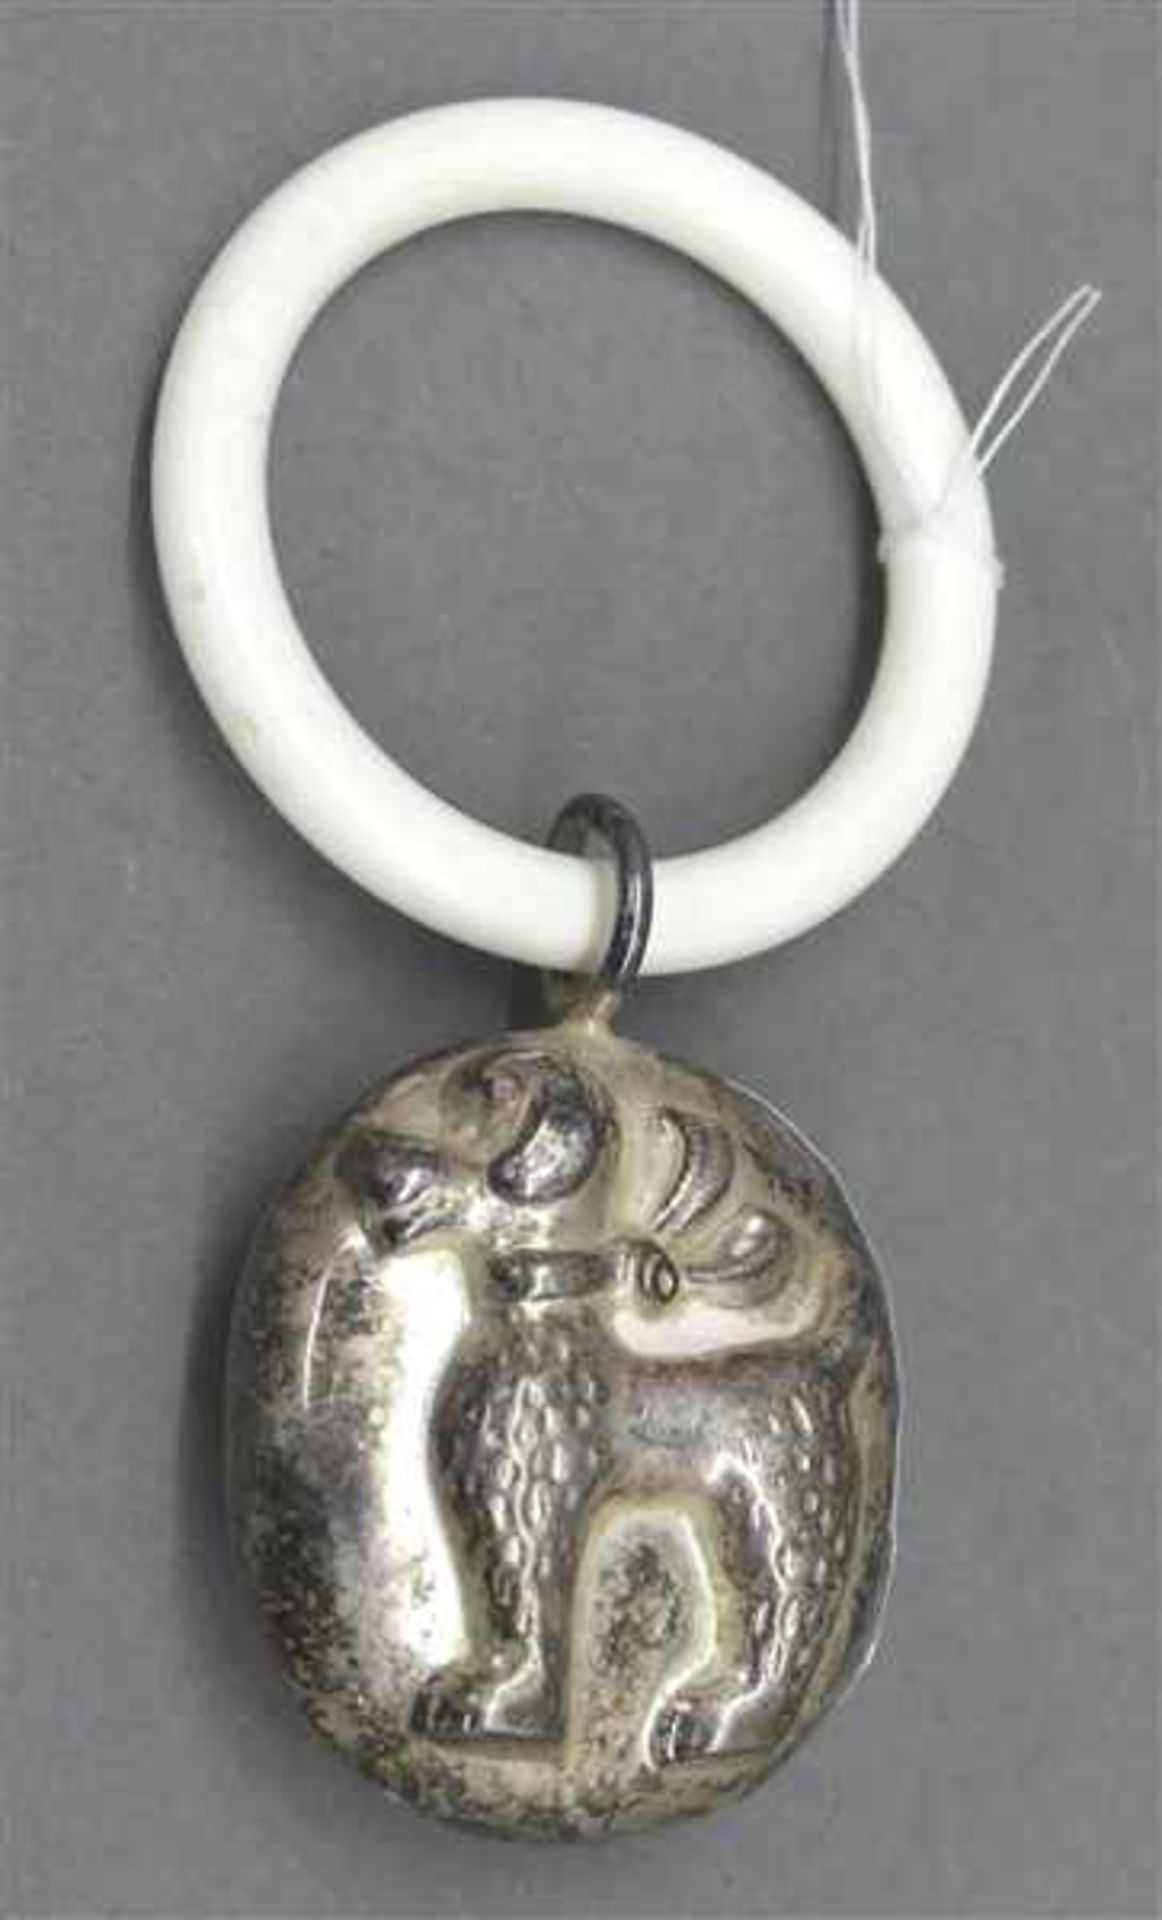 Babyrasselmit Beißring, Silber, Reliefdekor, "Pudel", h 9 cm,- - -20.00 % buyer's premium on the